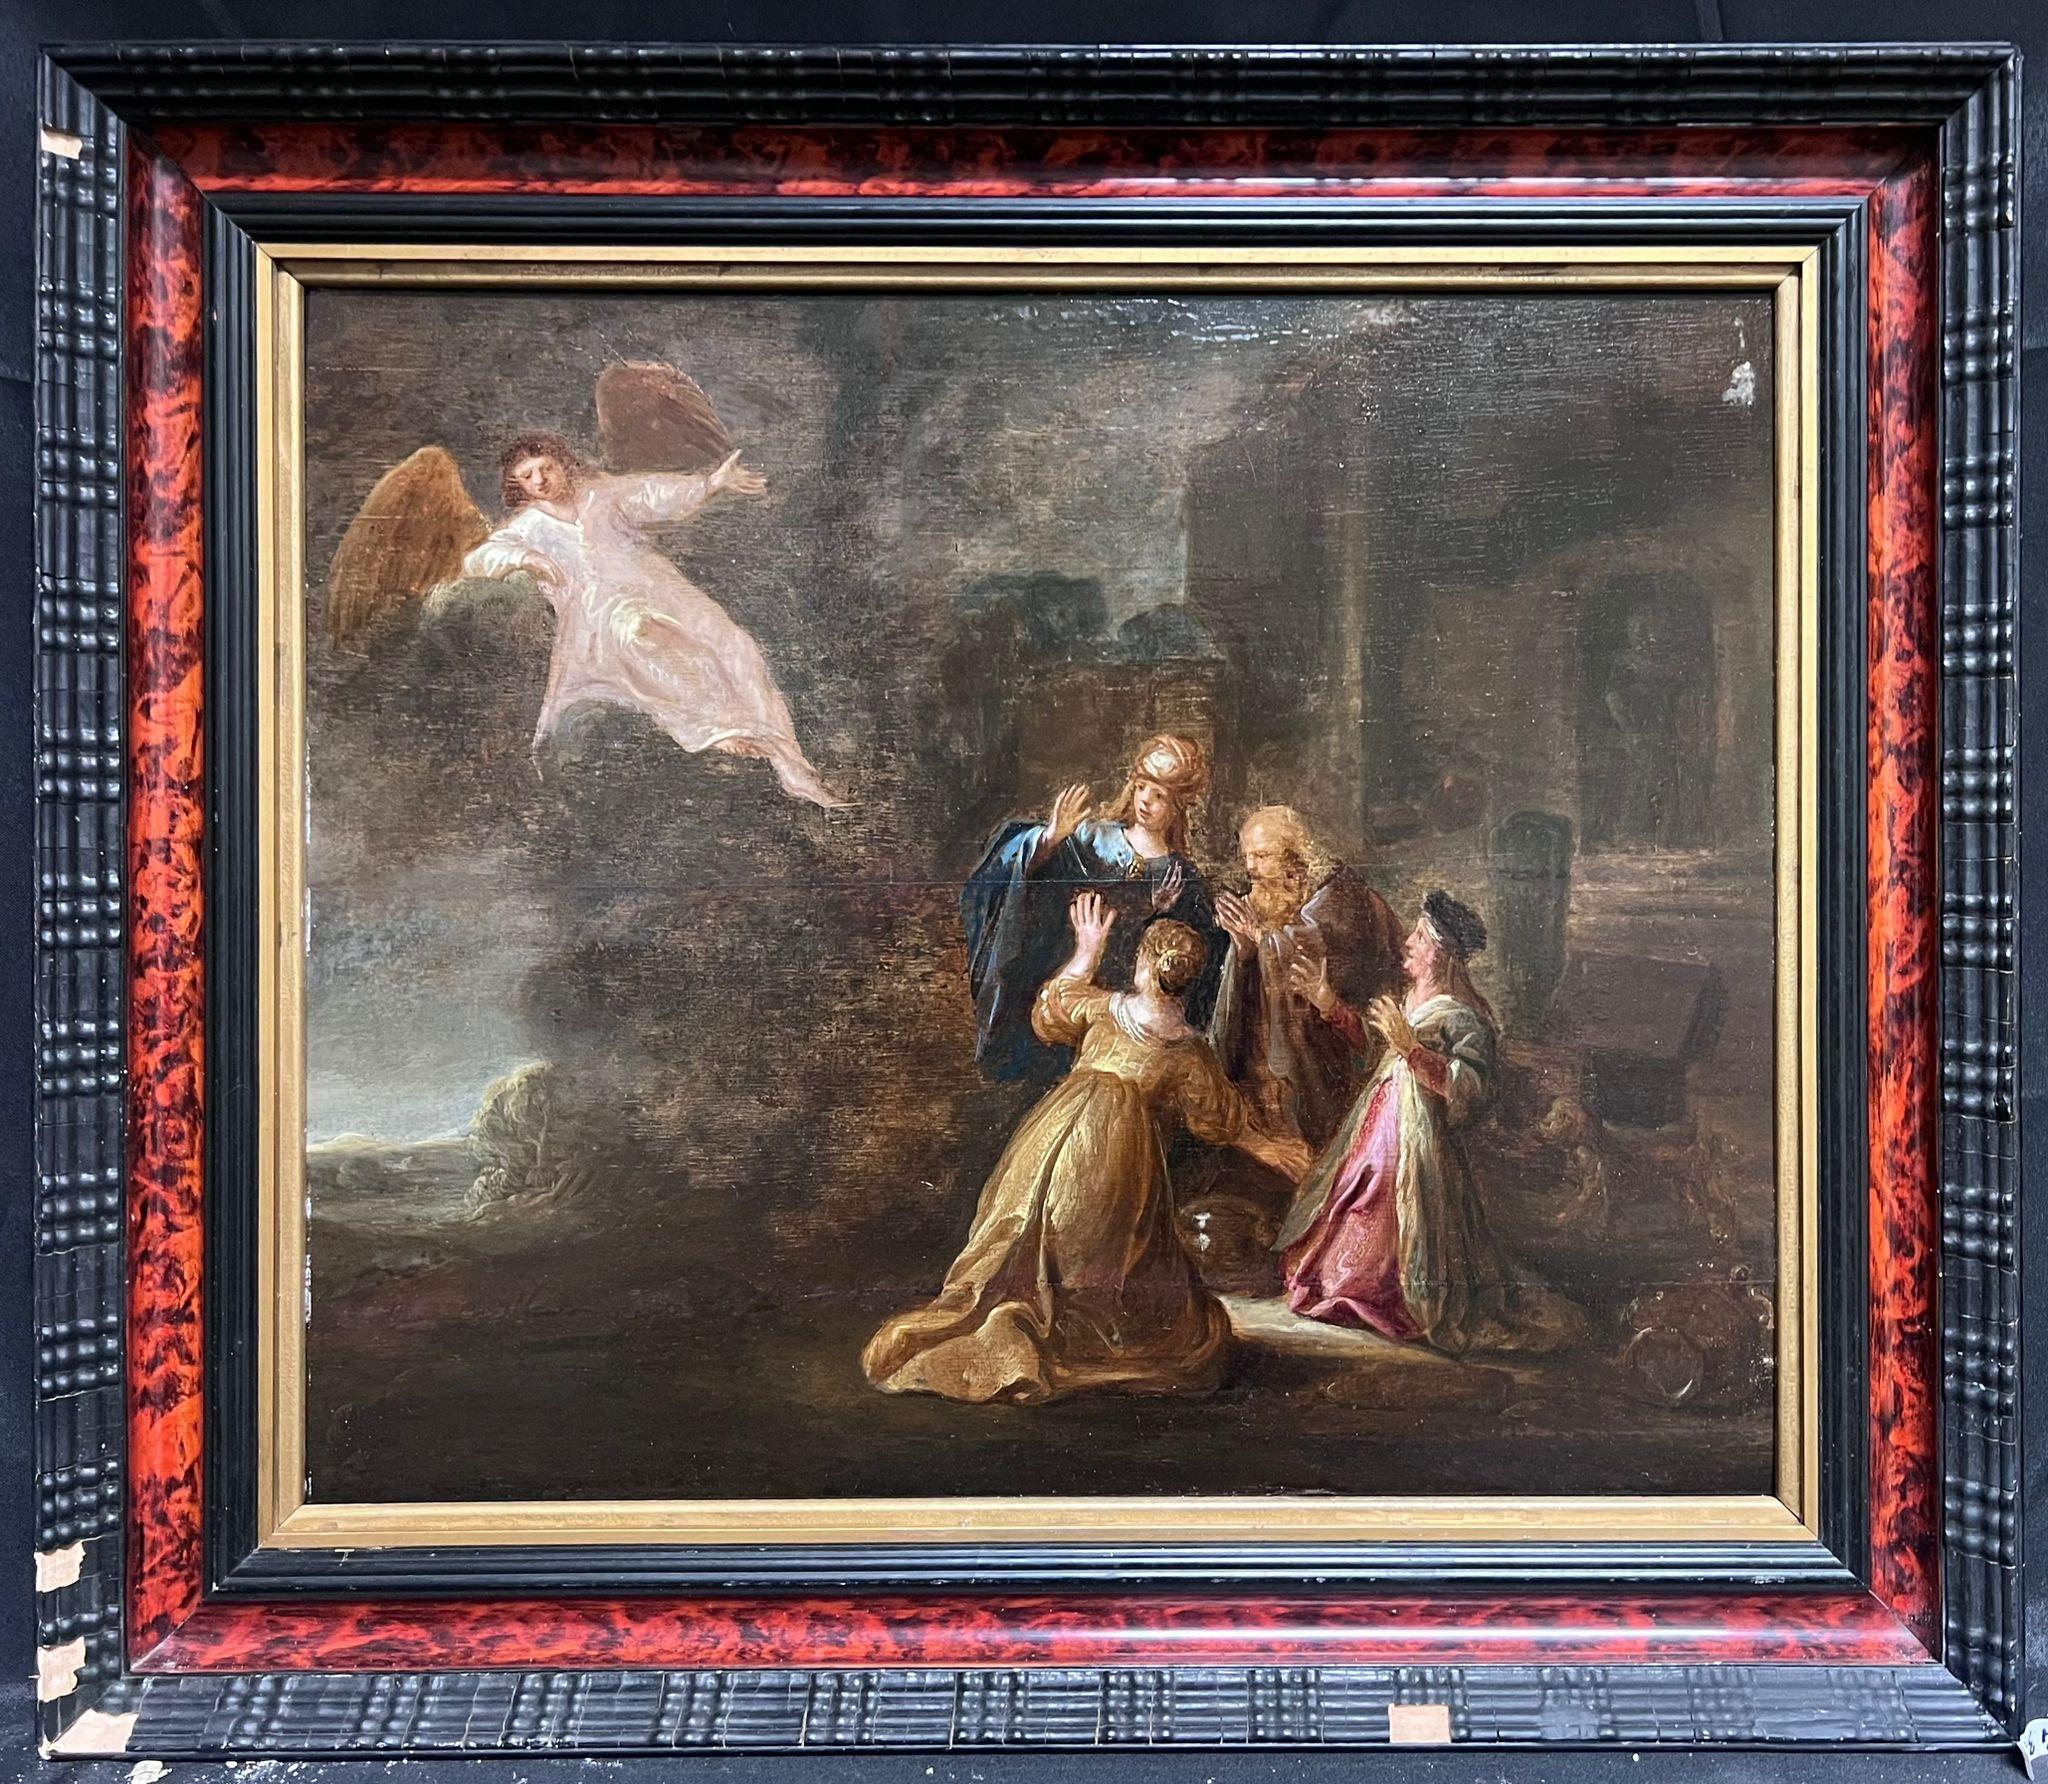 Feine 17. Jahrhundert Niederländisch Alter Meister Öl auf Panel Angelic Visitation zu Figuren – Painting von Rembrandt van Rijn